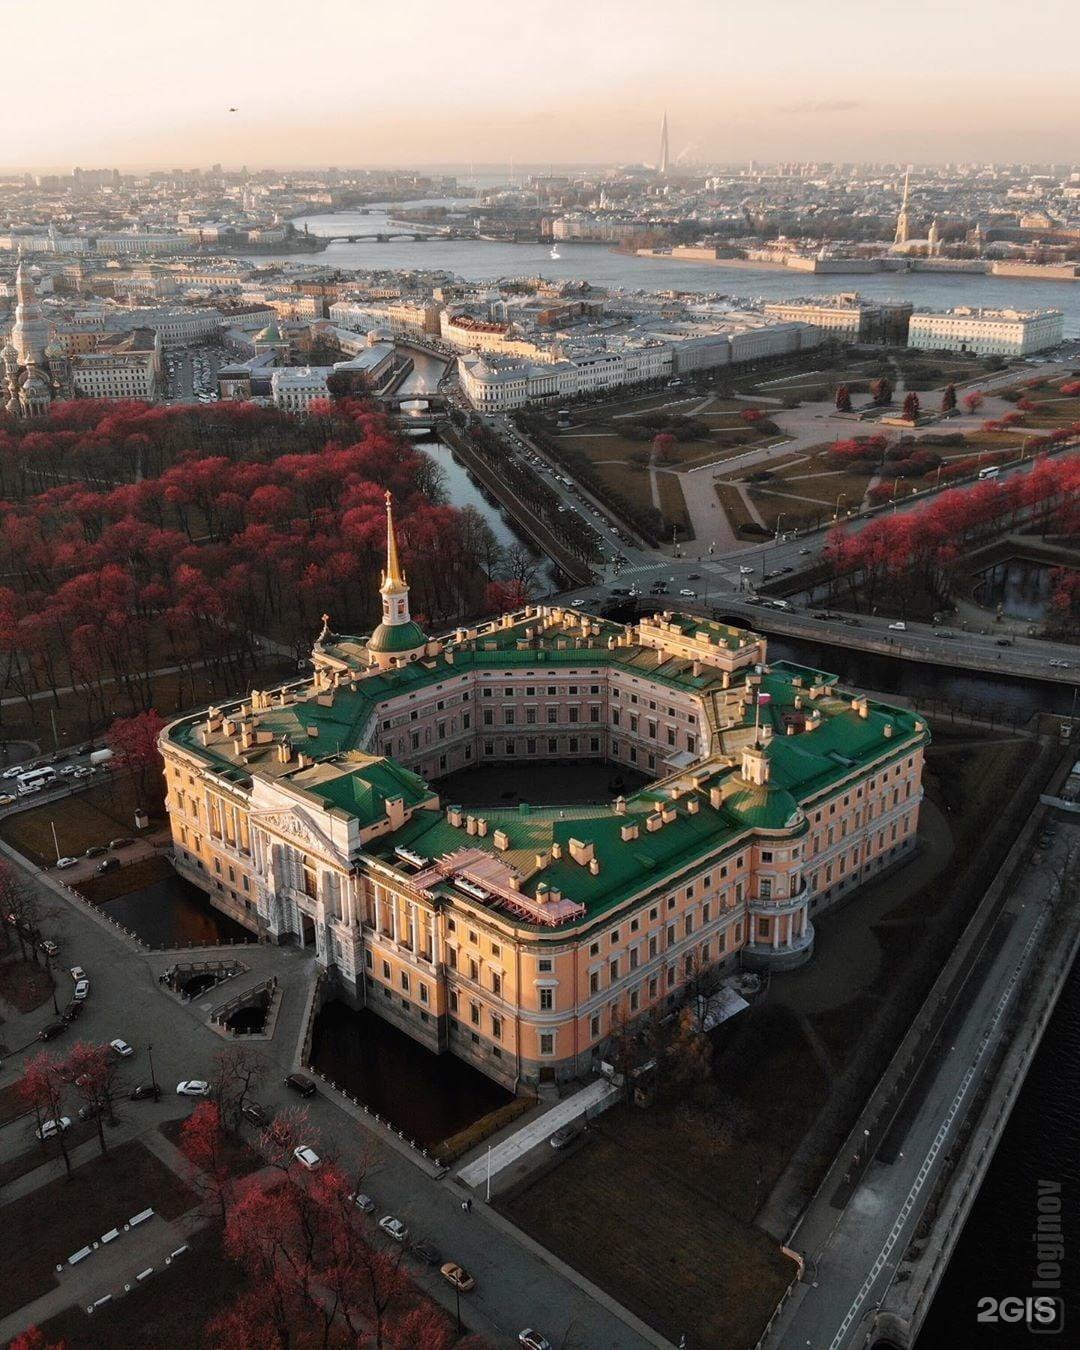 михайловский замок в санкт петербурге история